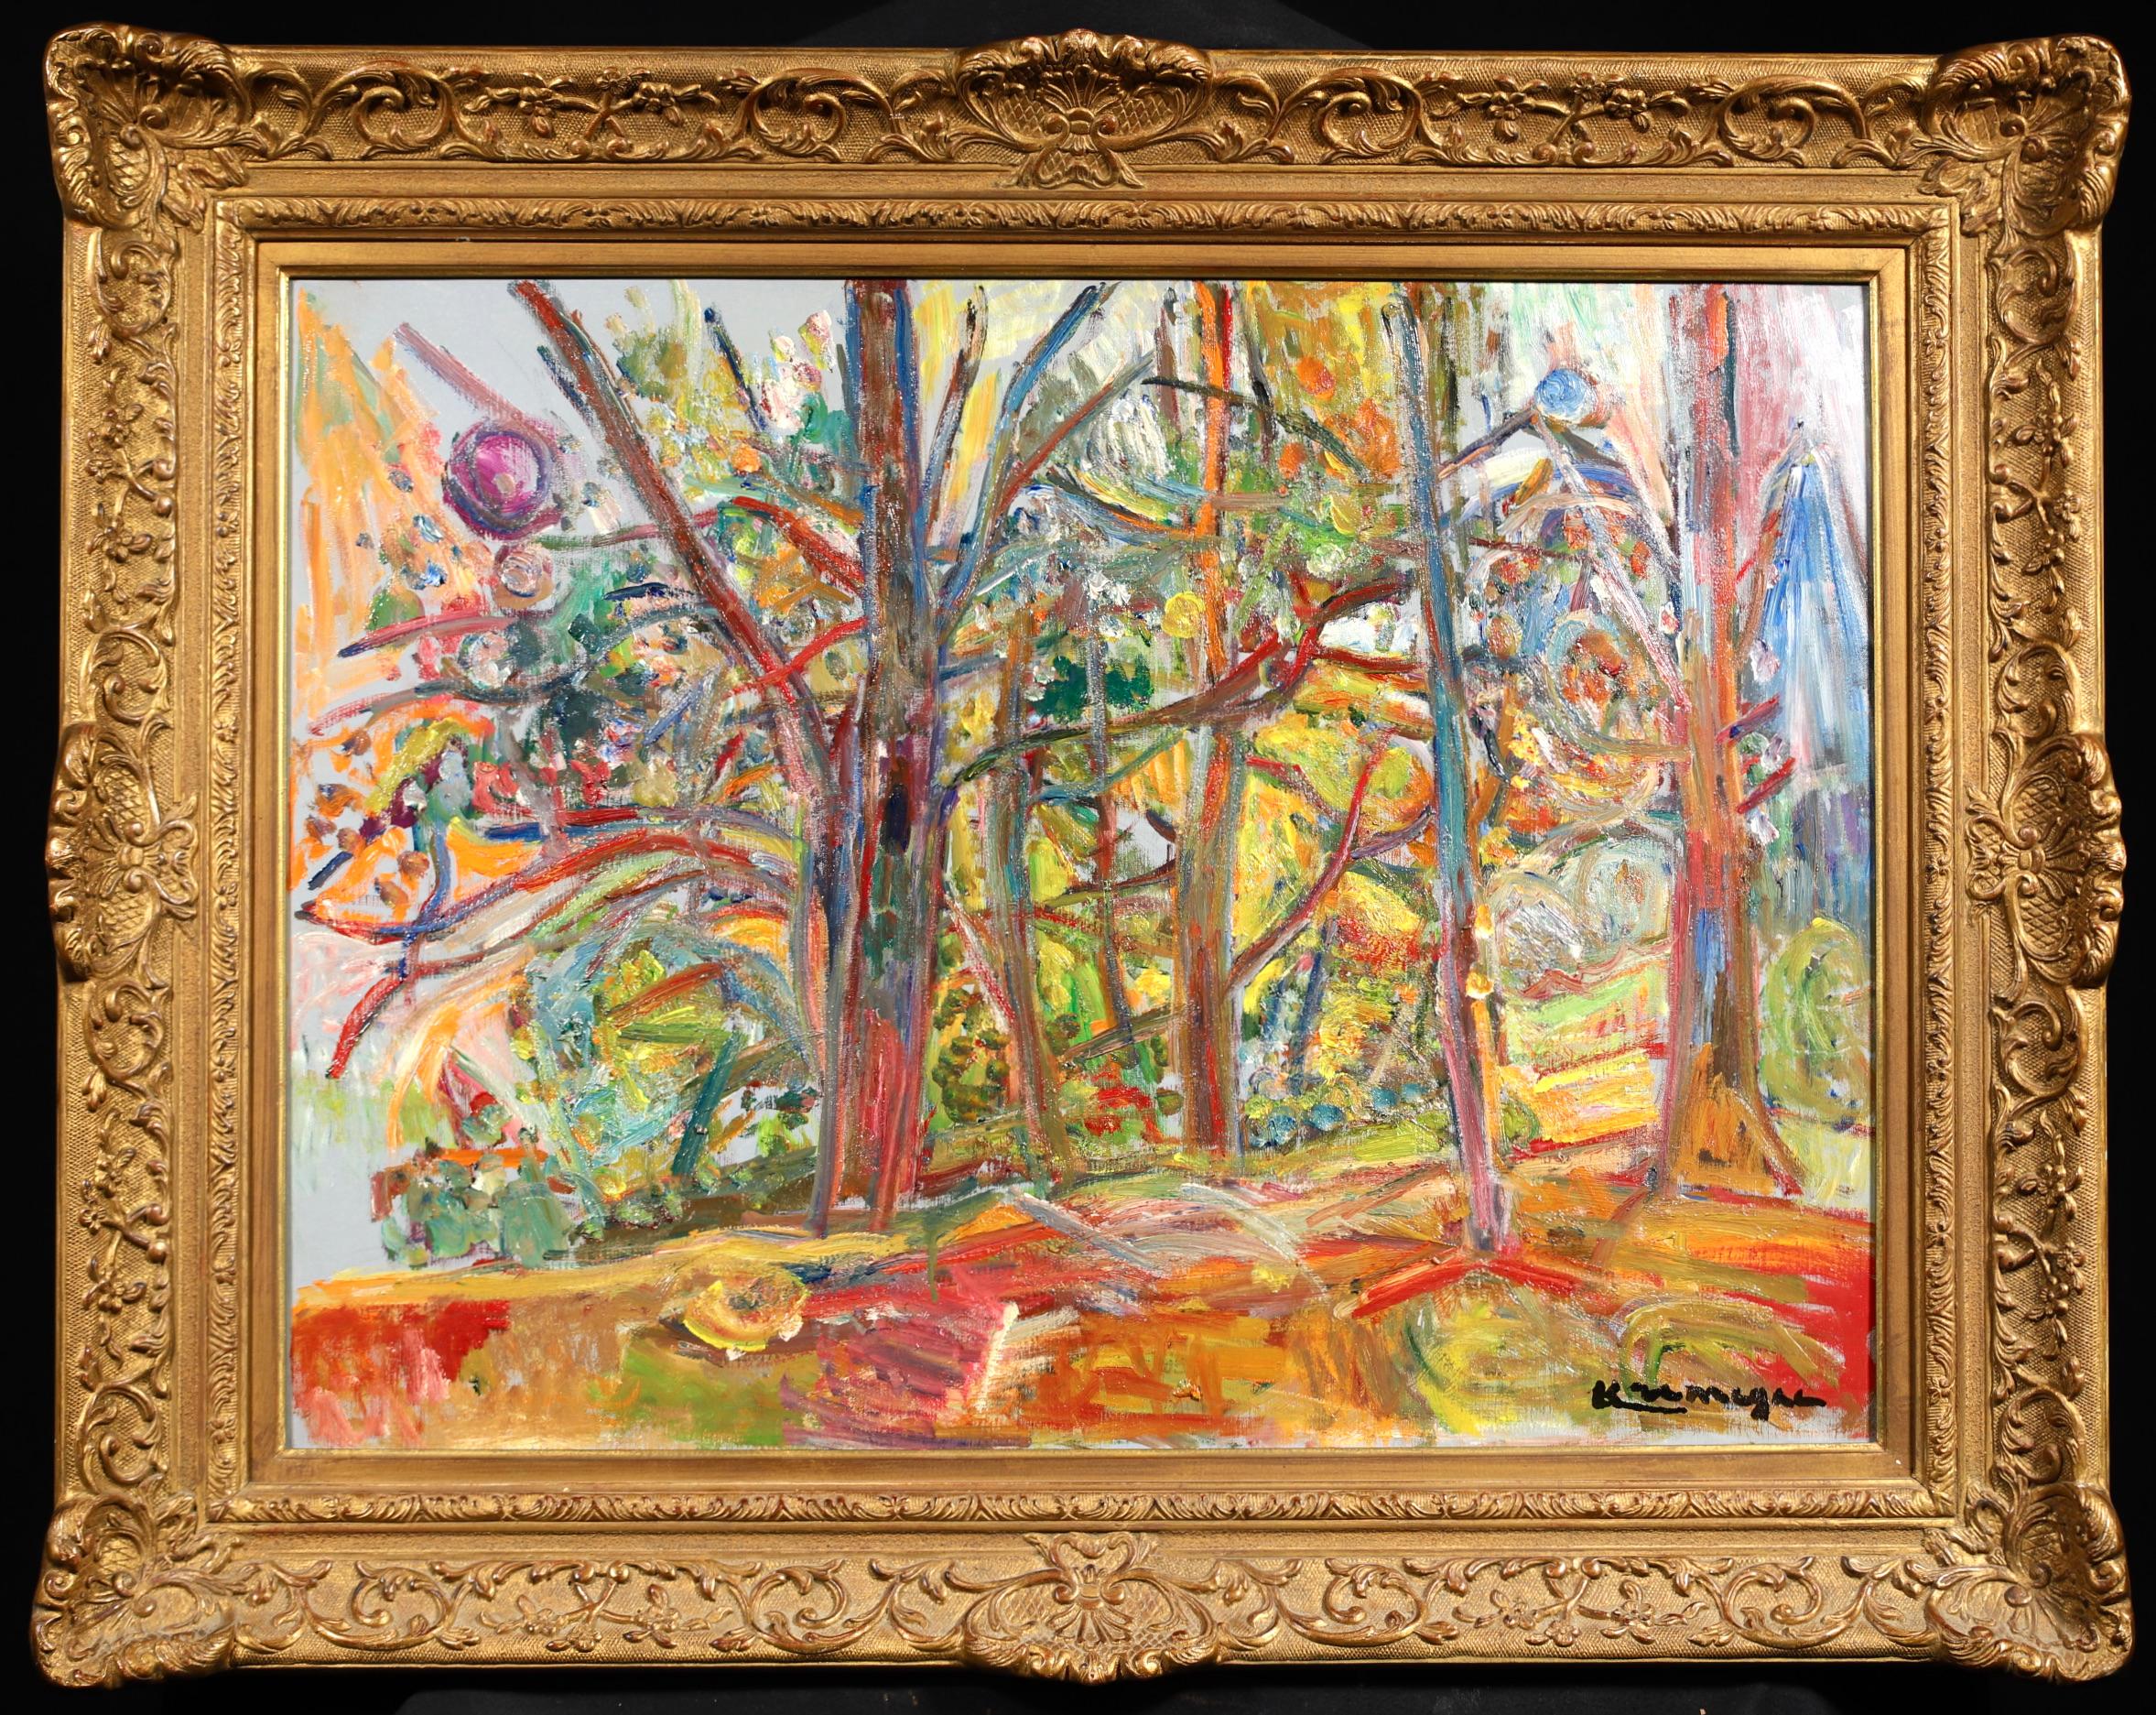 Huile sur toile signée du peintre franco-lituanien Pinchus Kremegne, datant de 1950, représentant un paysage expressionniste. Cette pièce étonnante, aux couleurs vives, provient des arbres de Ceret, dans les Pyrénées, dans le sud de la